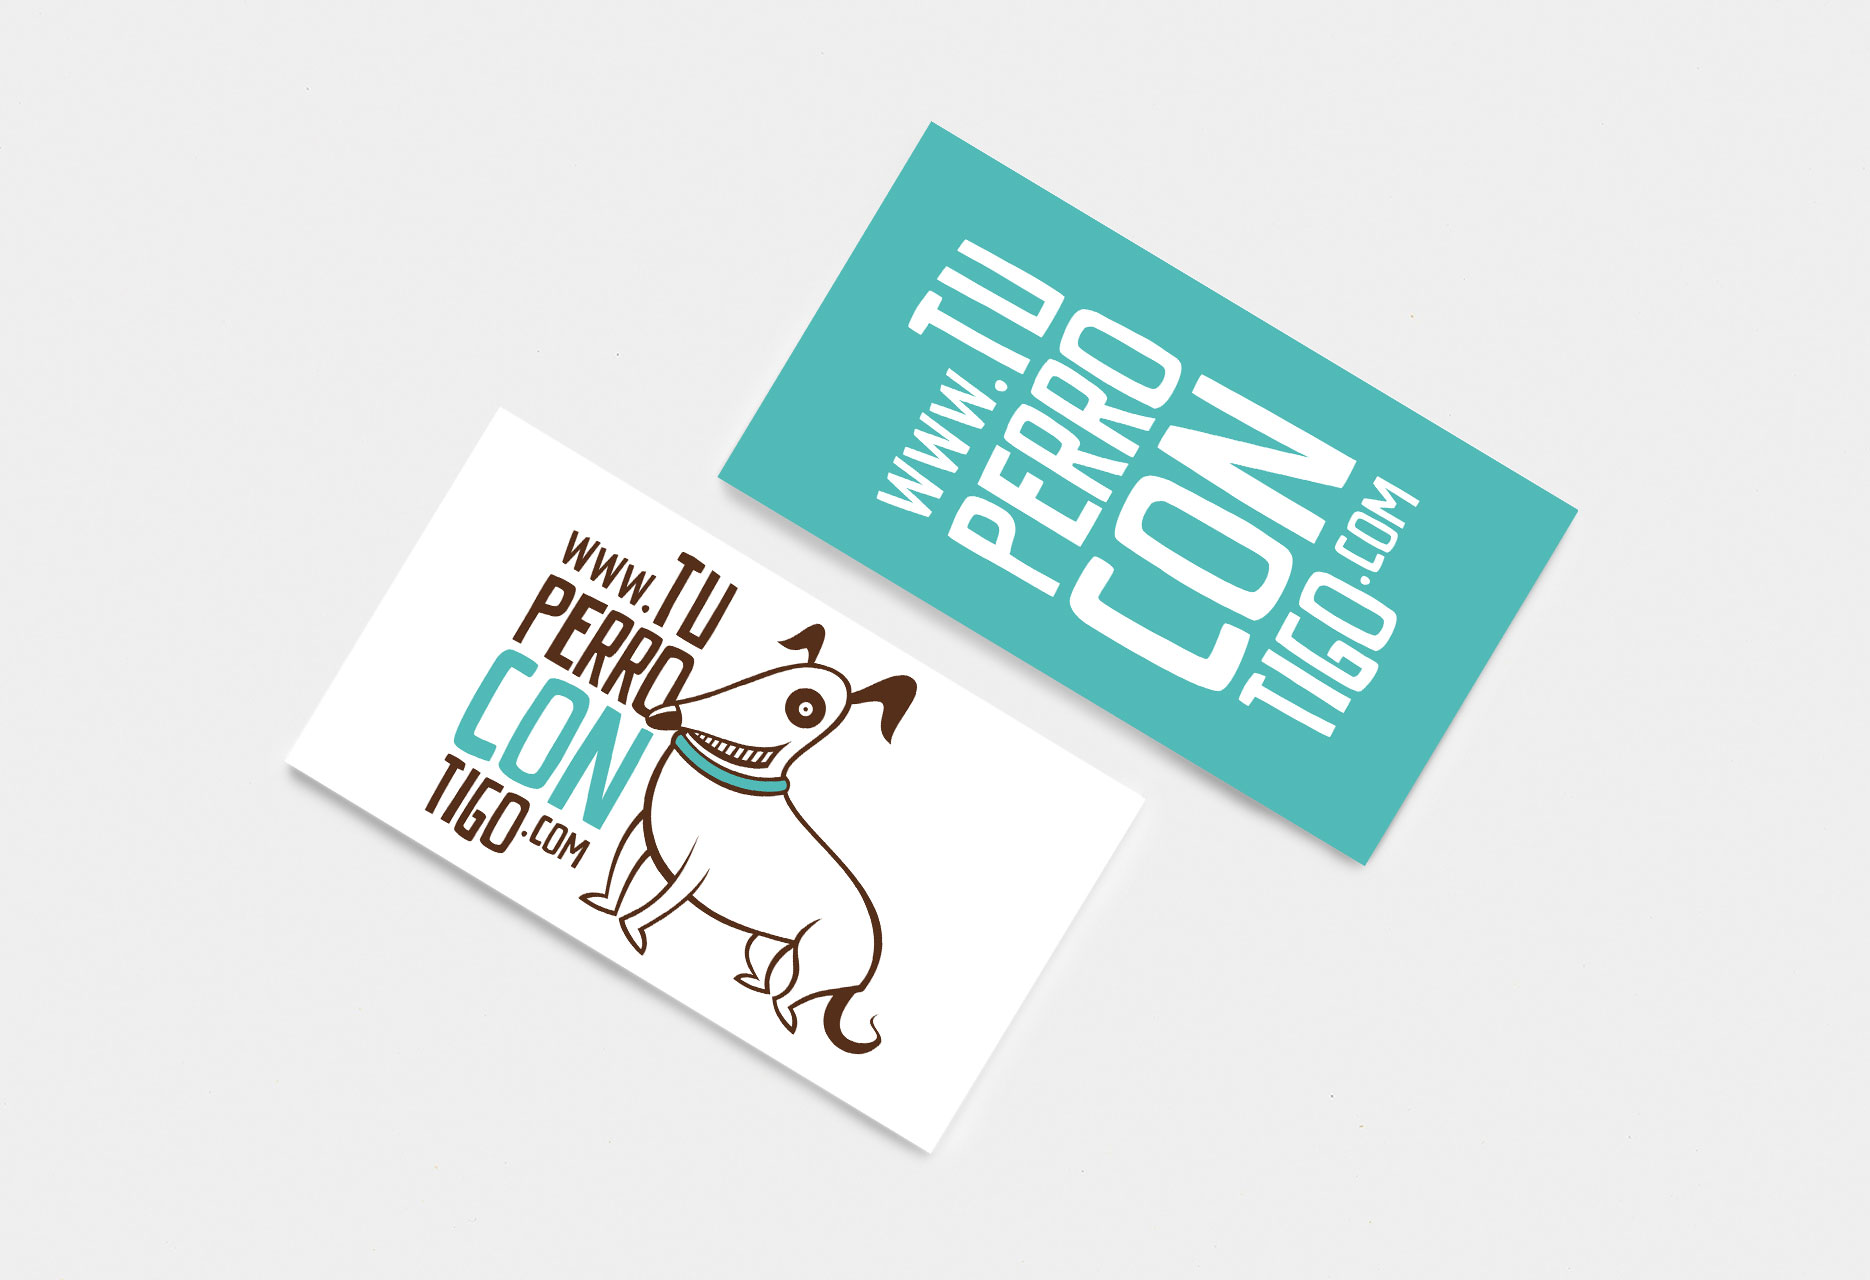 Marca gráfica y diseño web Tu perro contigo - cartelería / diseño web / identidad corporativa / ilustración